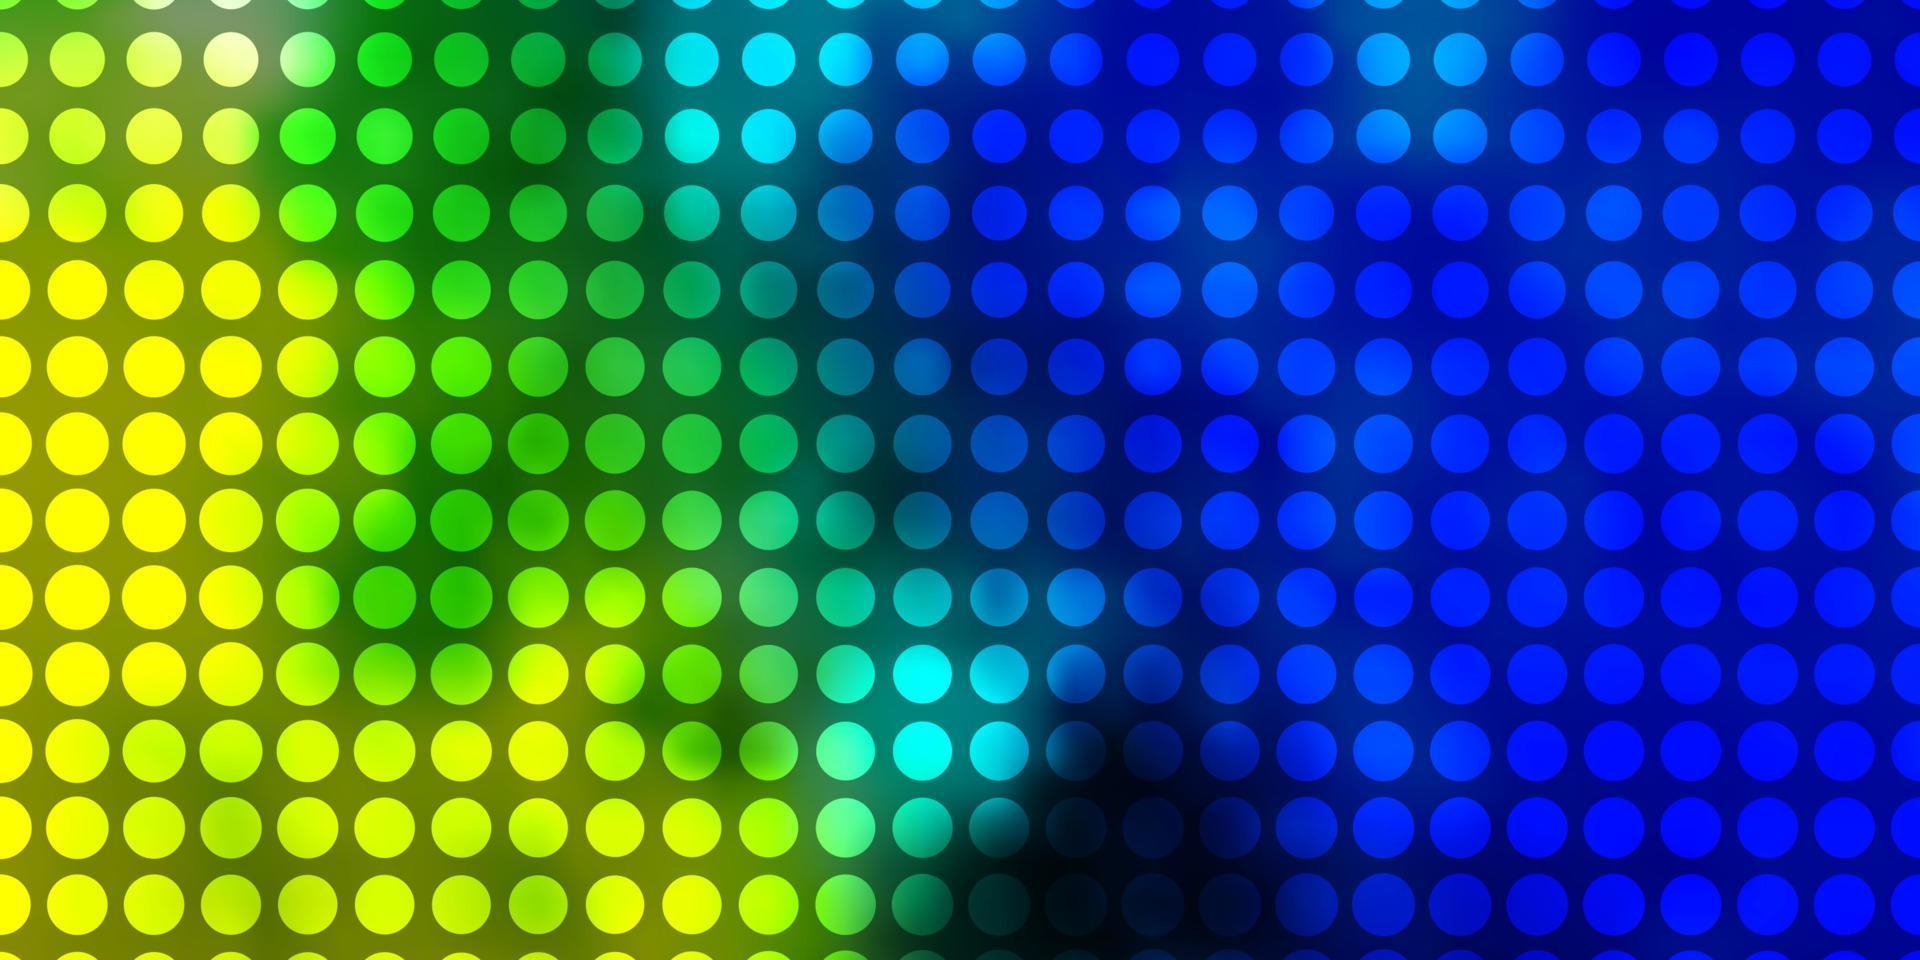 ljusblå, grön vektorbakgrund med cirklar. vektor